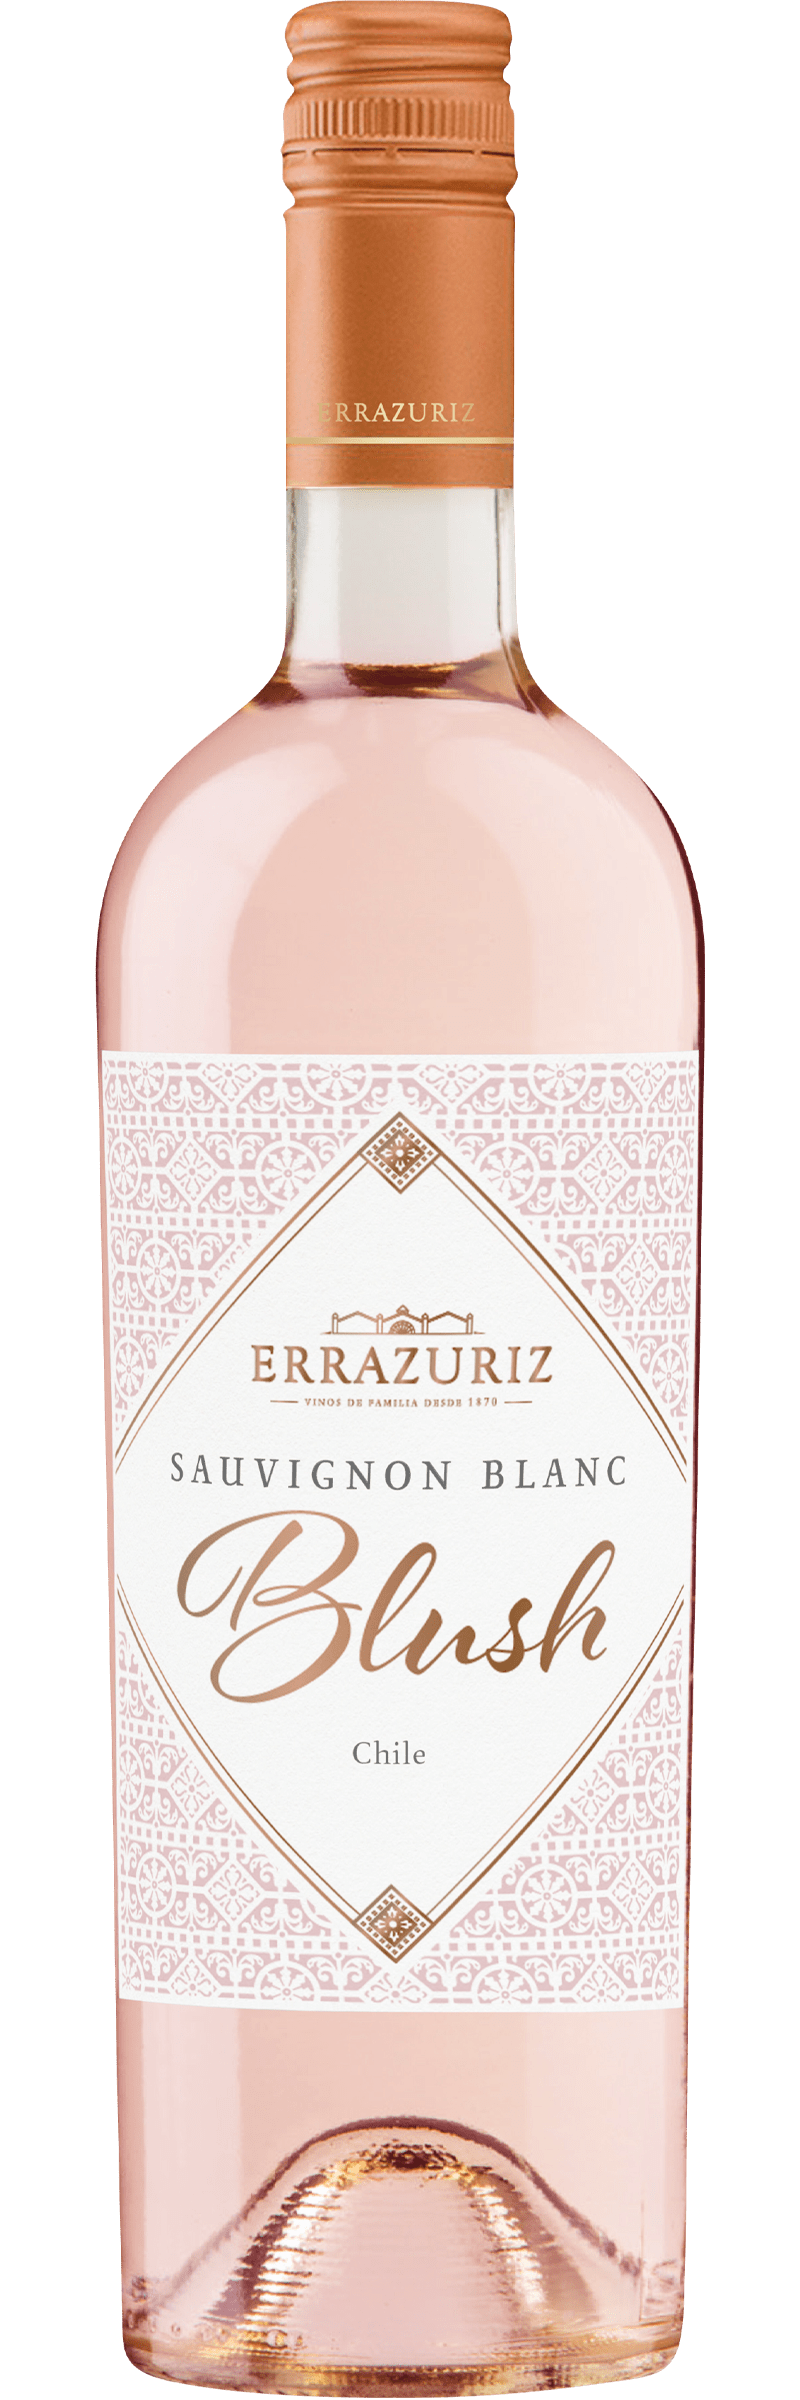 Errazuriz Estate Reserva Sauvignon Blanc Blush 2020 75cl